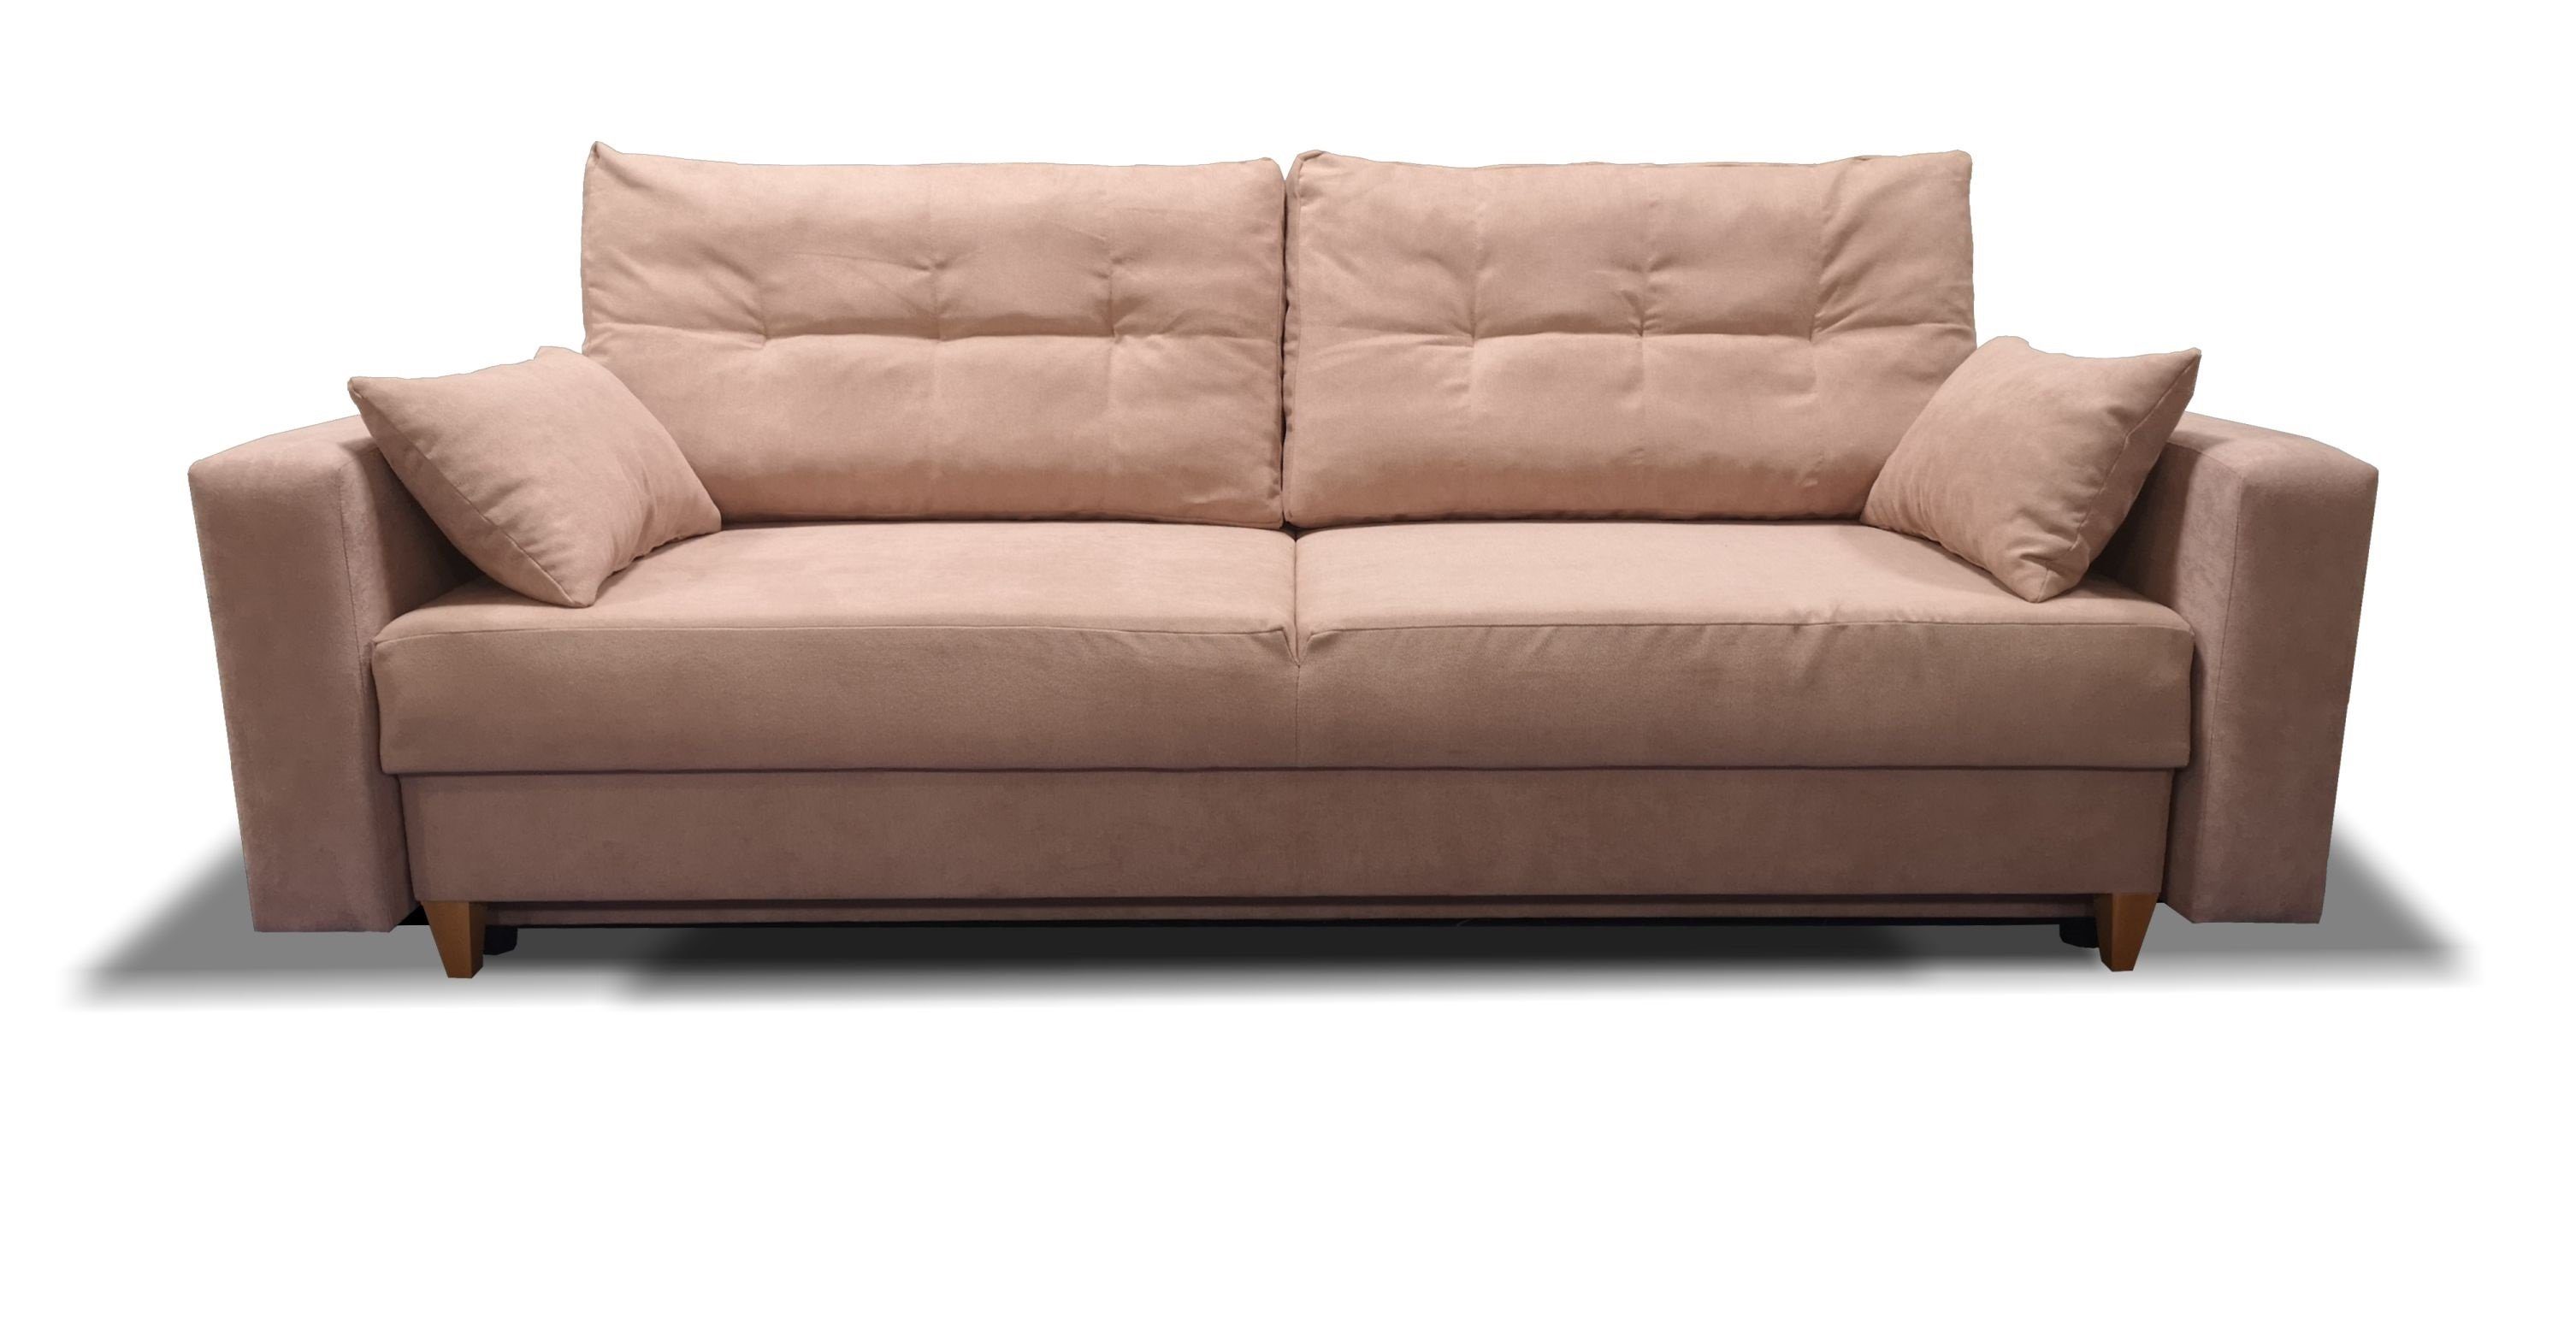 Siblo 3-Sitzer Moderne Dreisitzige Couch Gio mit Schlaffunktion - Bettzeugbehälter - Dreisitzer-Sofa Rosa